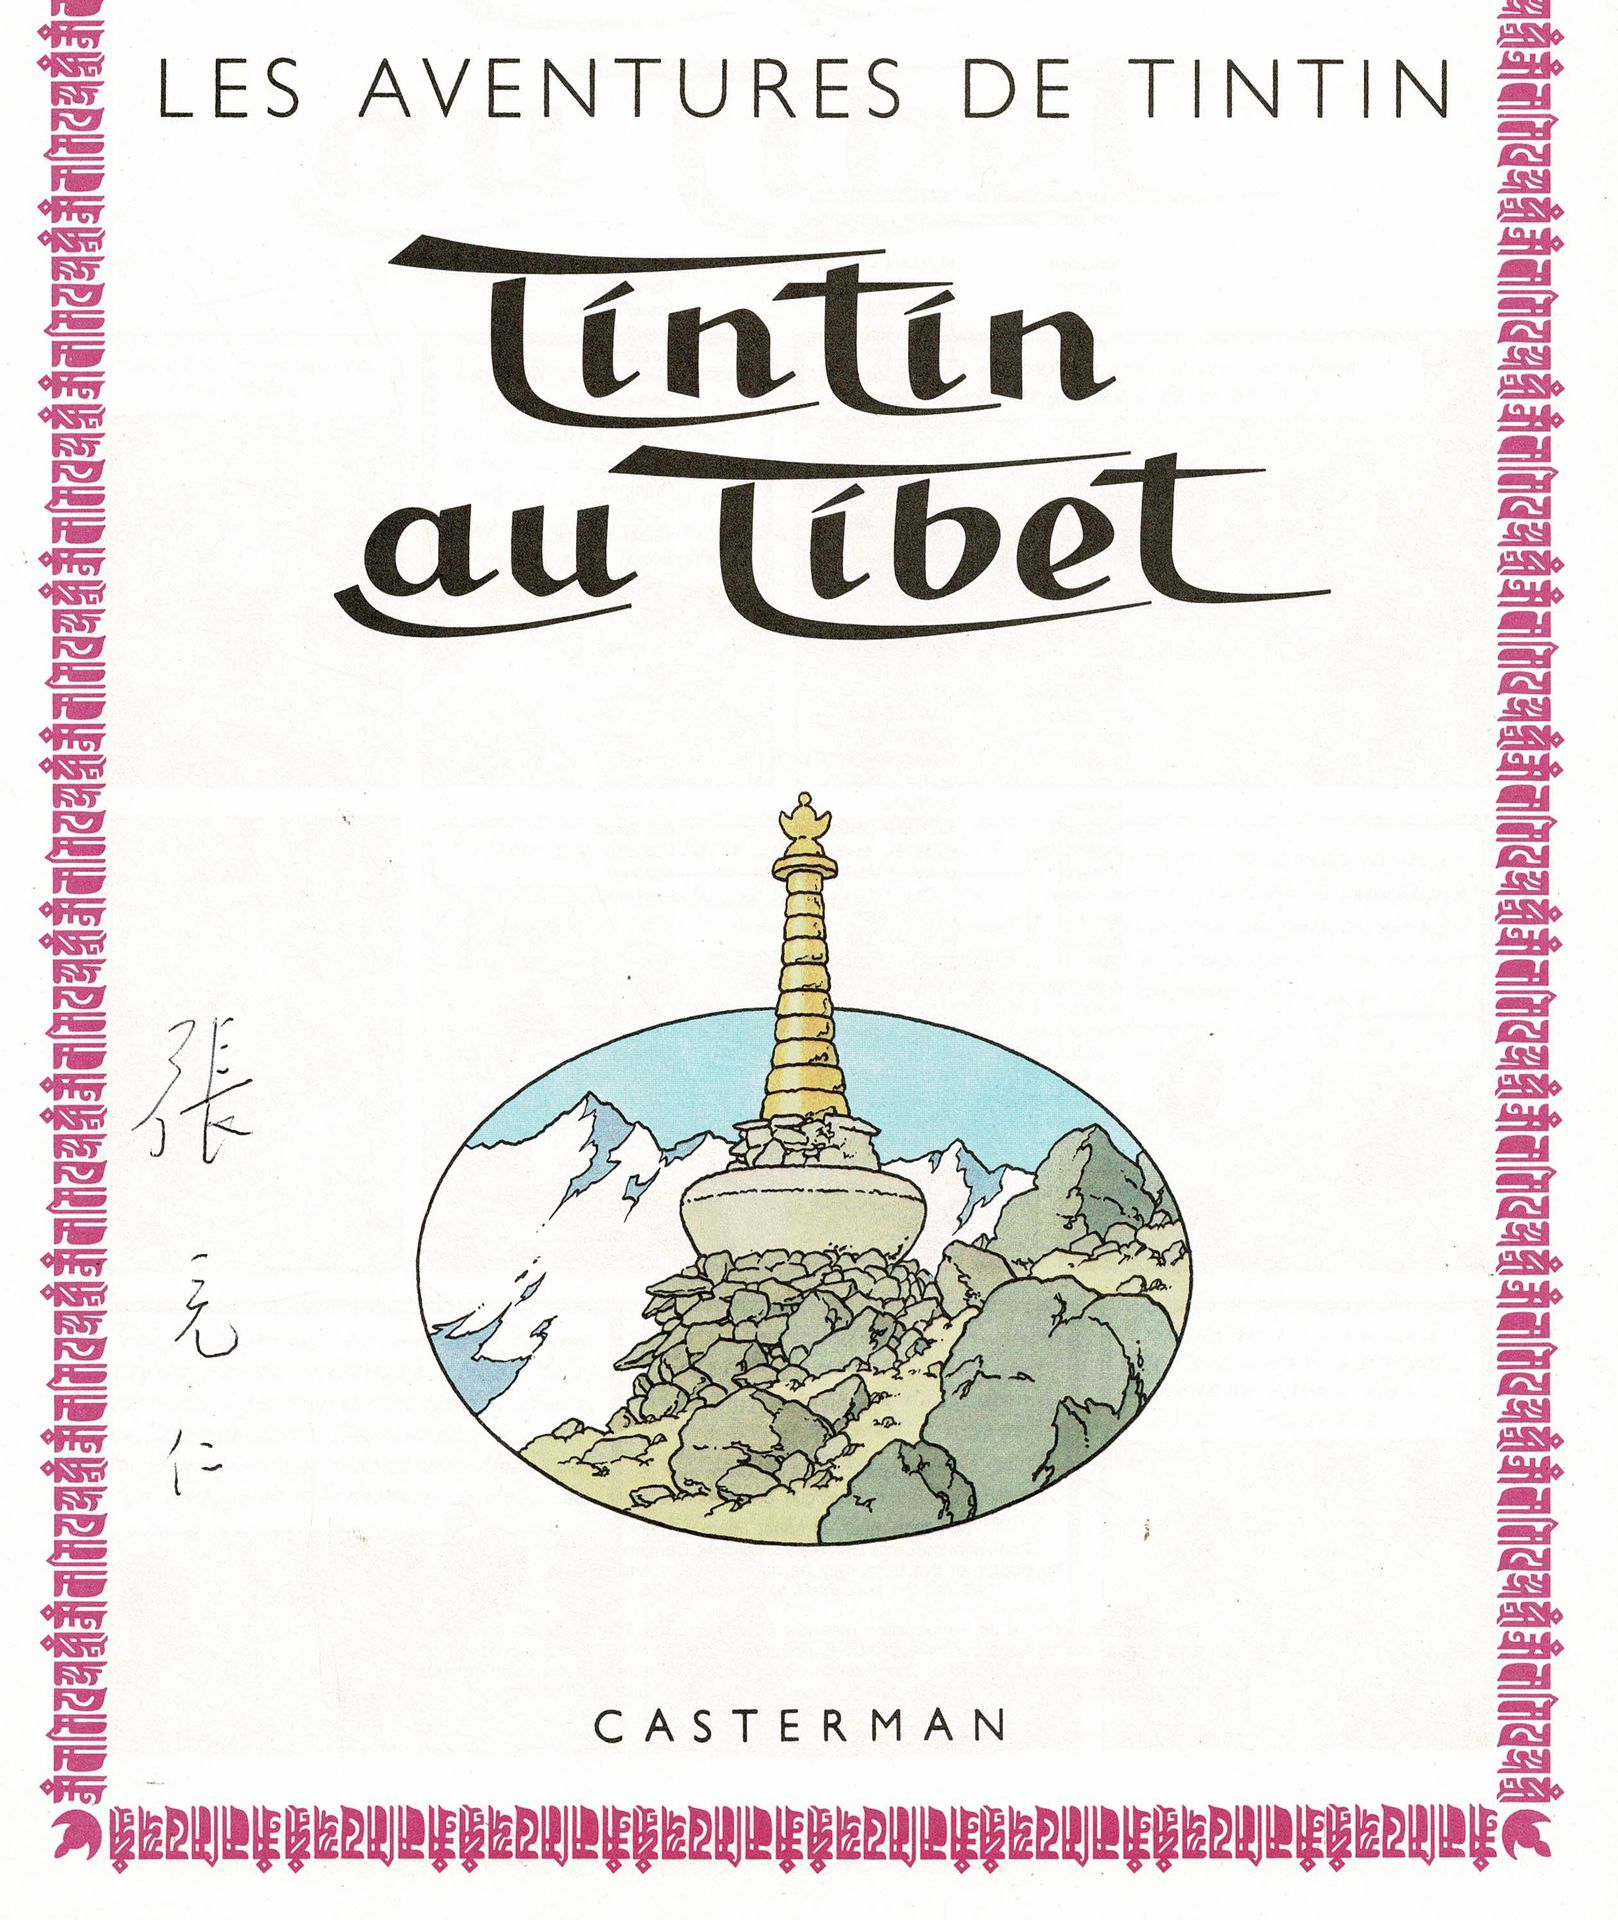 HERGÉ 
Tintin in Tibet (C8, 1987) mit Chiangs Unterschrift. Neuer Zustand.